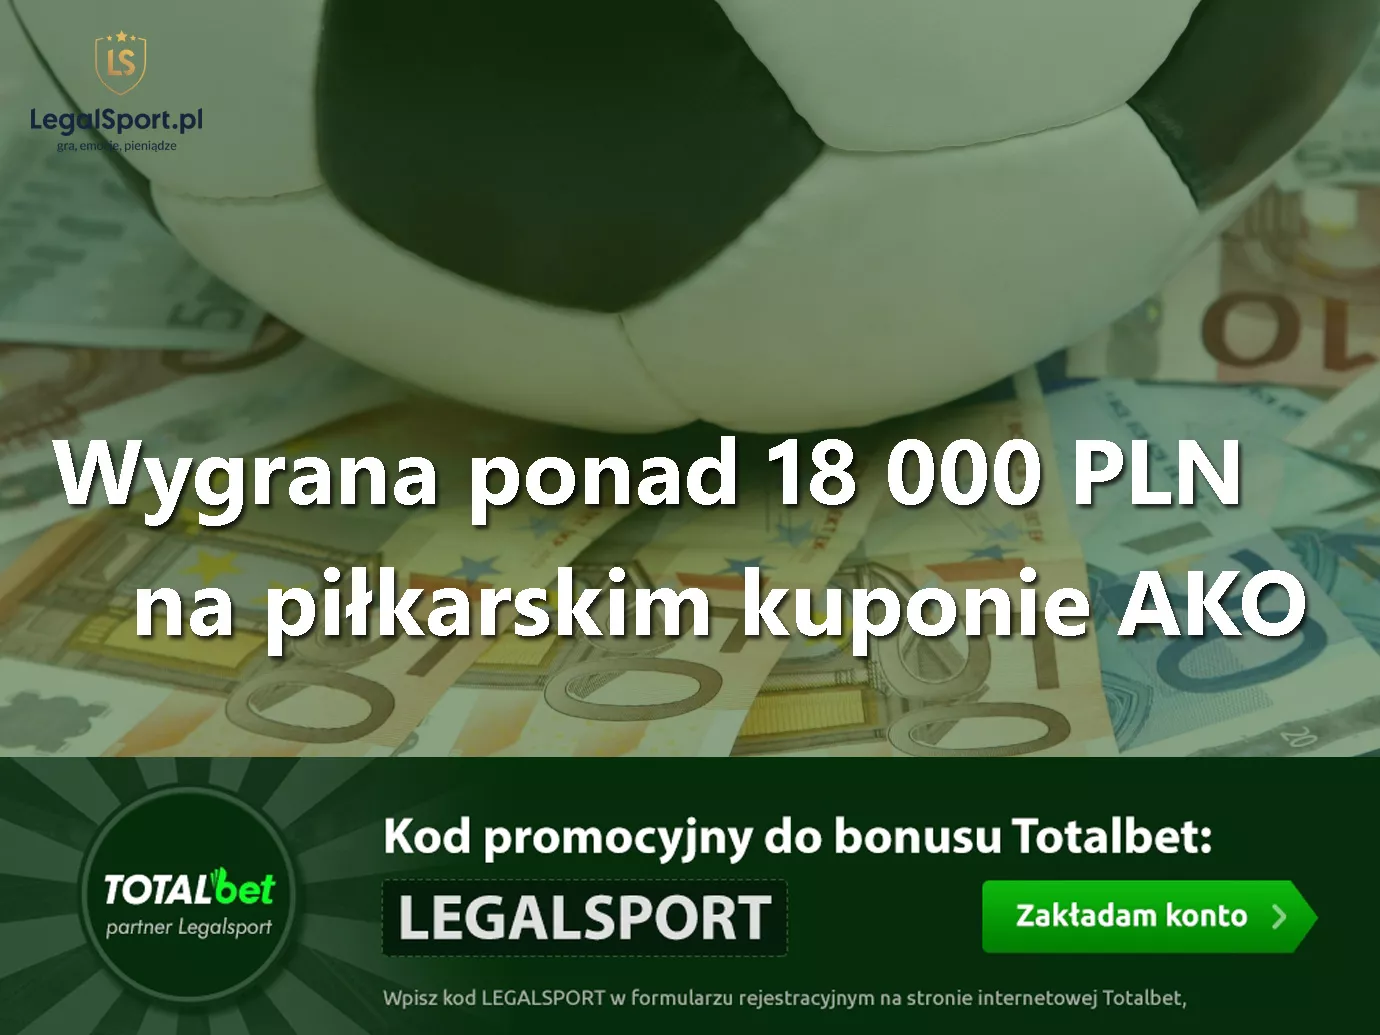 Wygrany kupon AKO10 na piłkę nożną - 18 000 zł